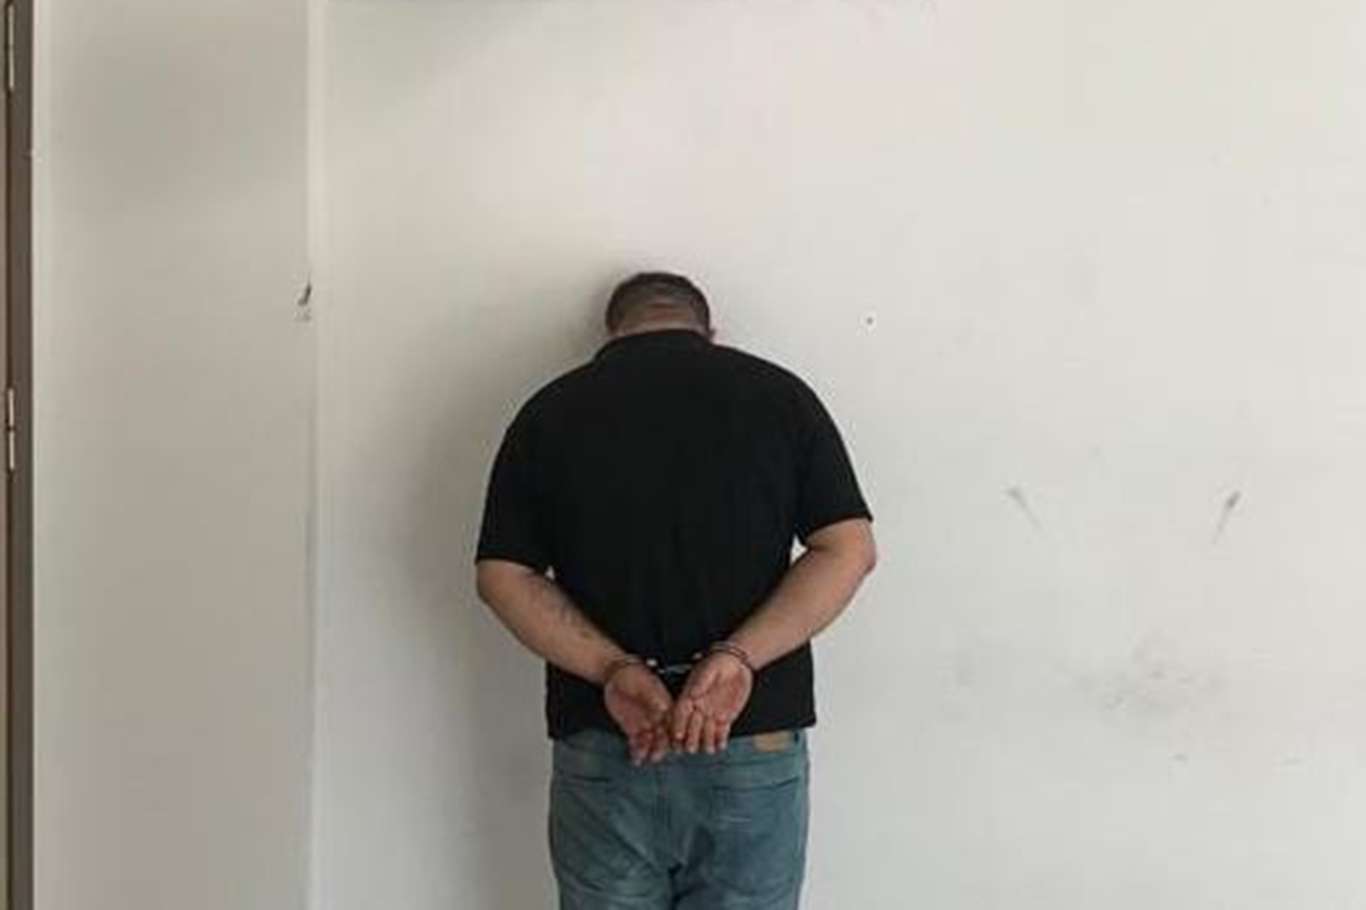 Gaziantep’te 26 suç kaydı bulunan ve hırsızlık yapan şahıs yakalandı